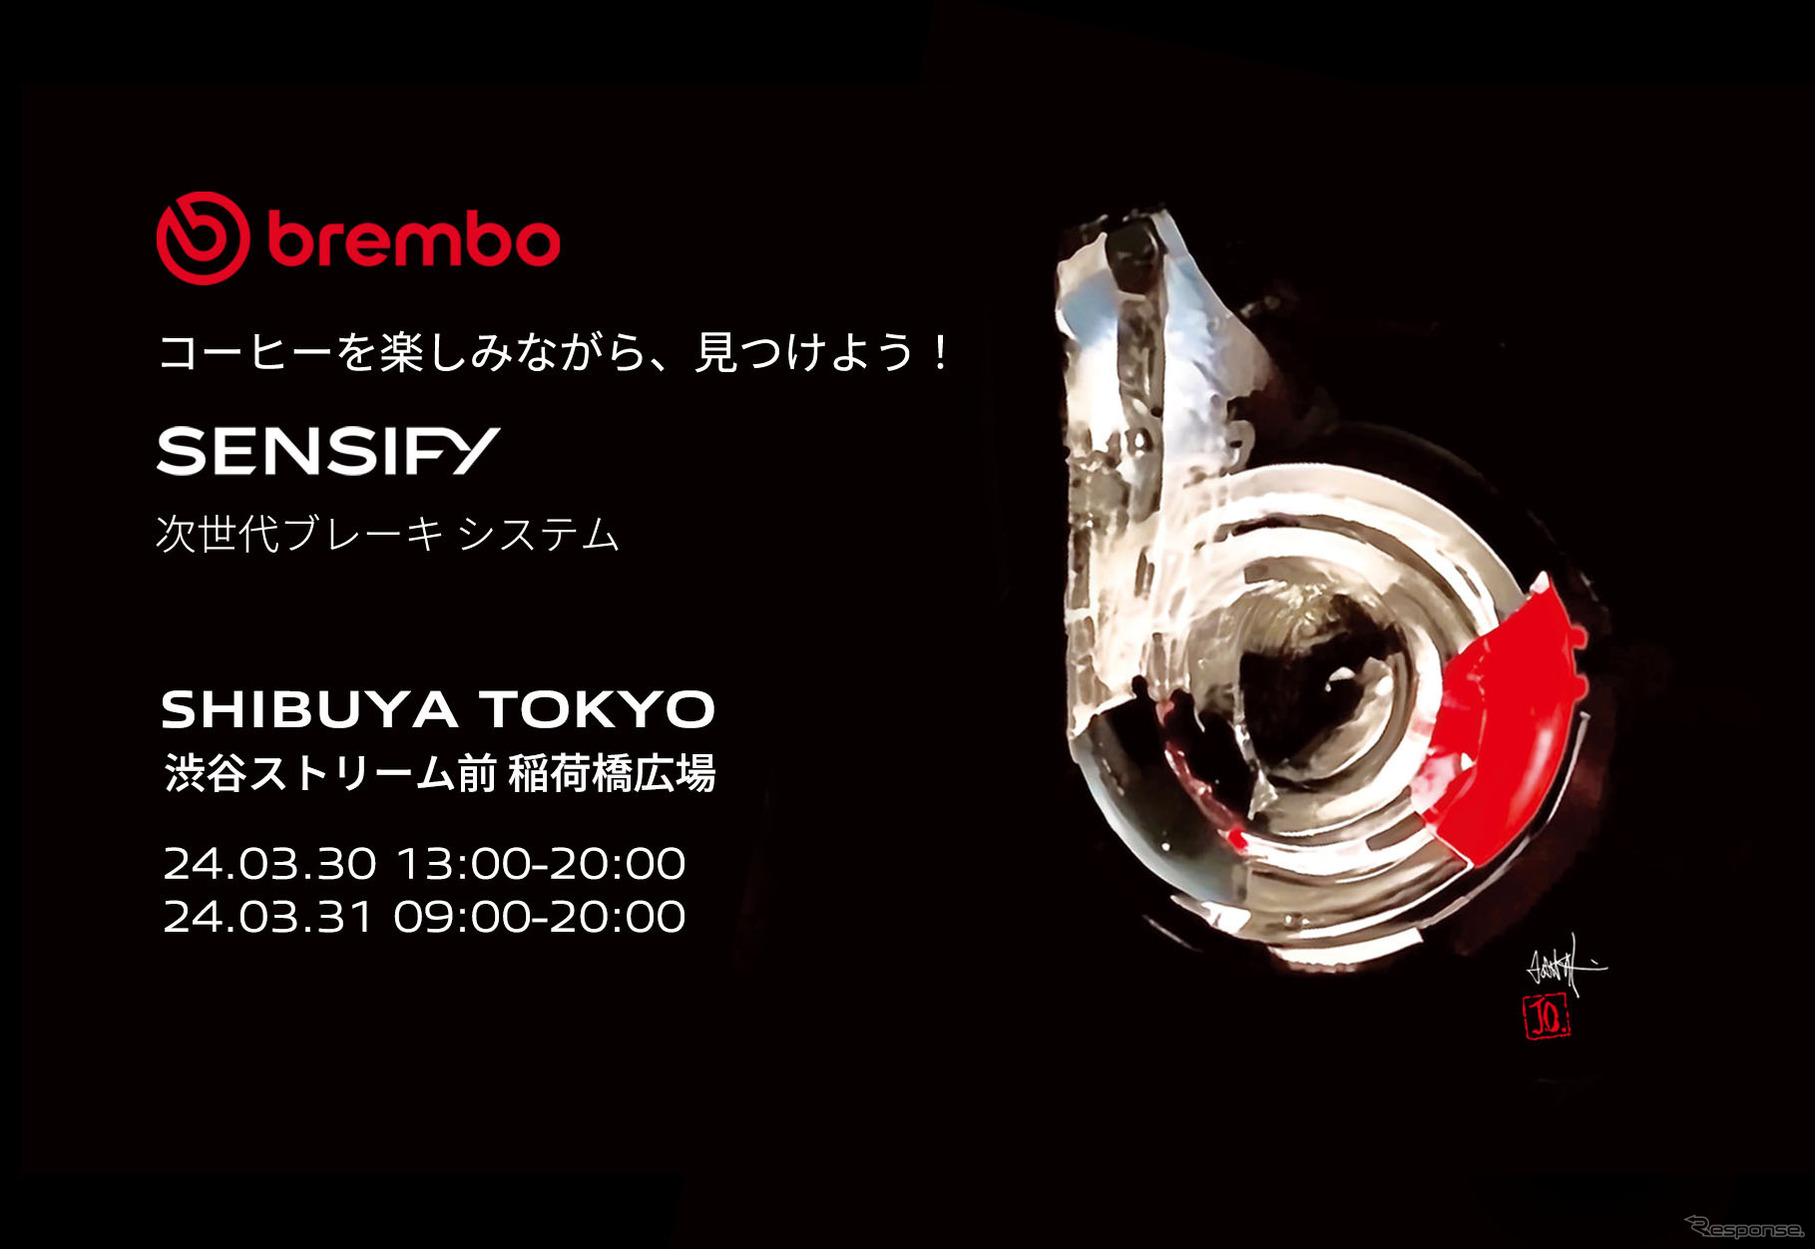 ブレンボが渋谷で3/30-31、期間限定イベント「Brembo Activation Tokyo」開催